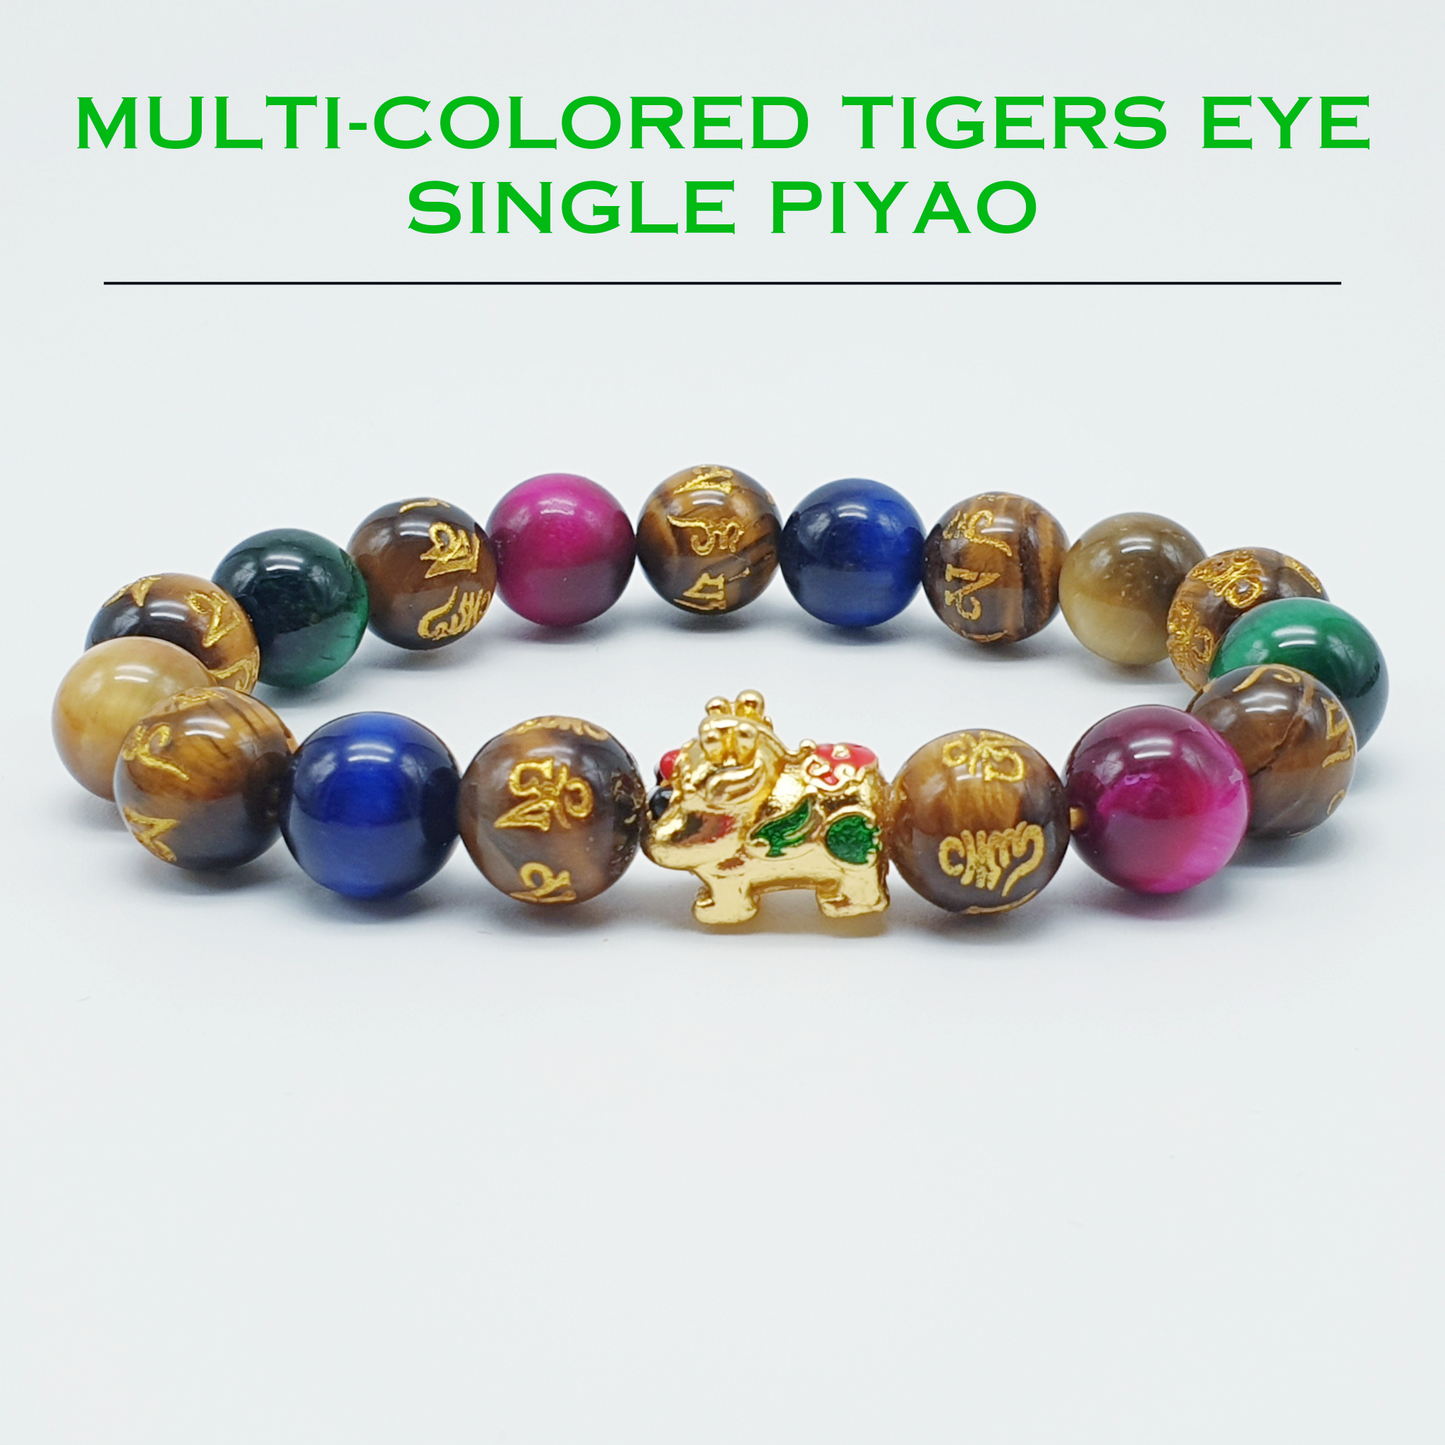 CNY 1 - Muti Colored Tigers Eye Single Piyao Set